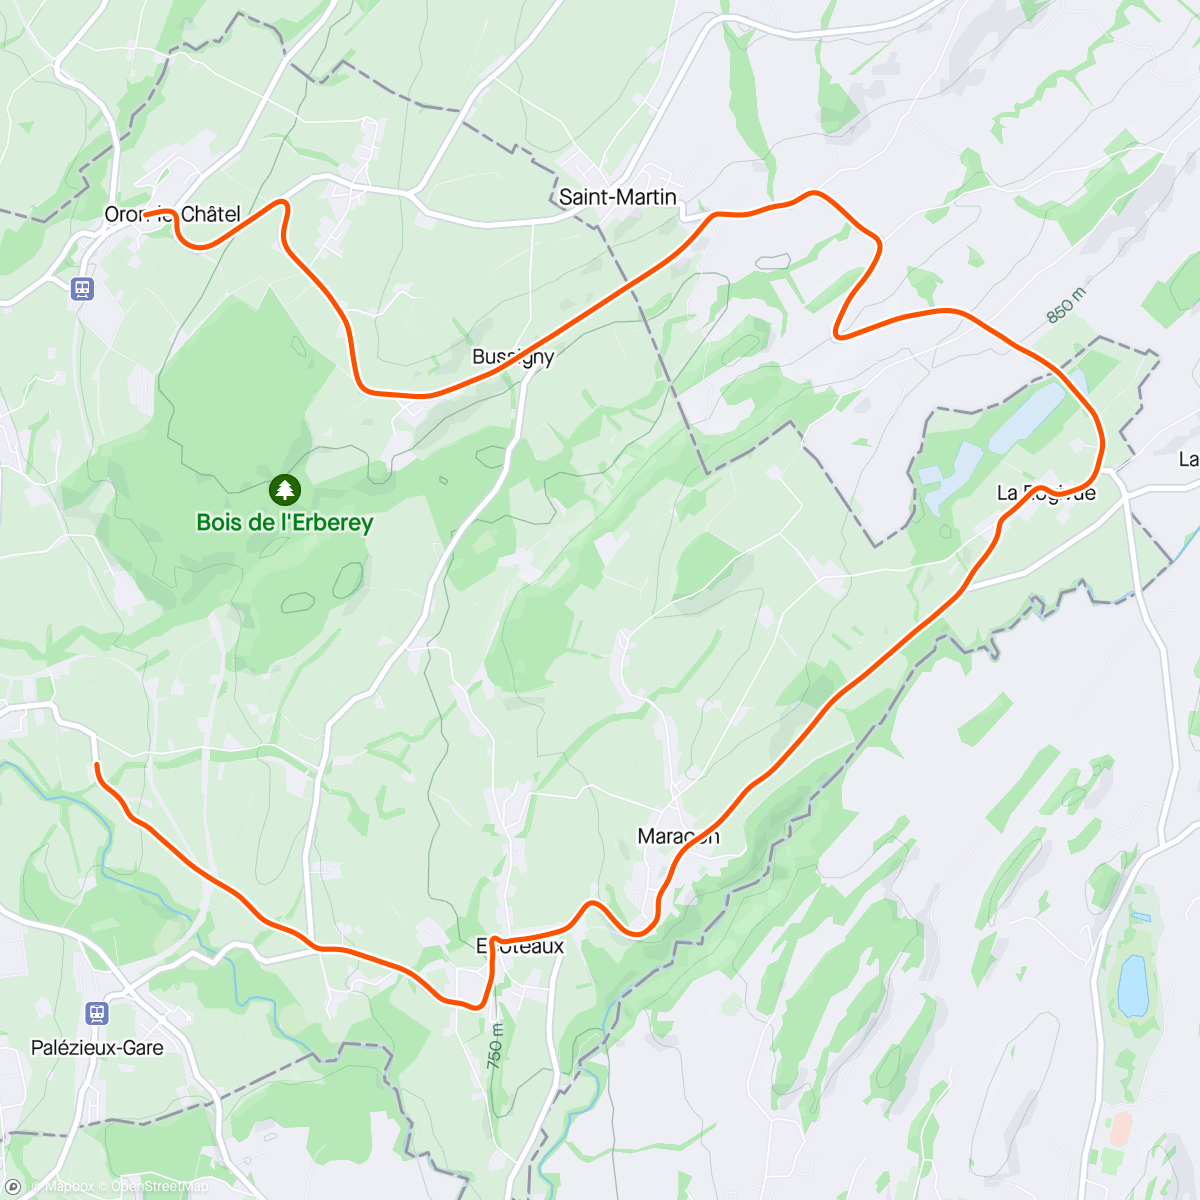 アクティビティ「Giro pomeridiano」の地図